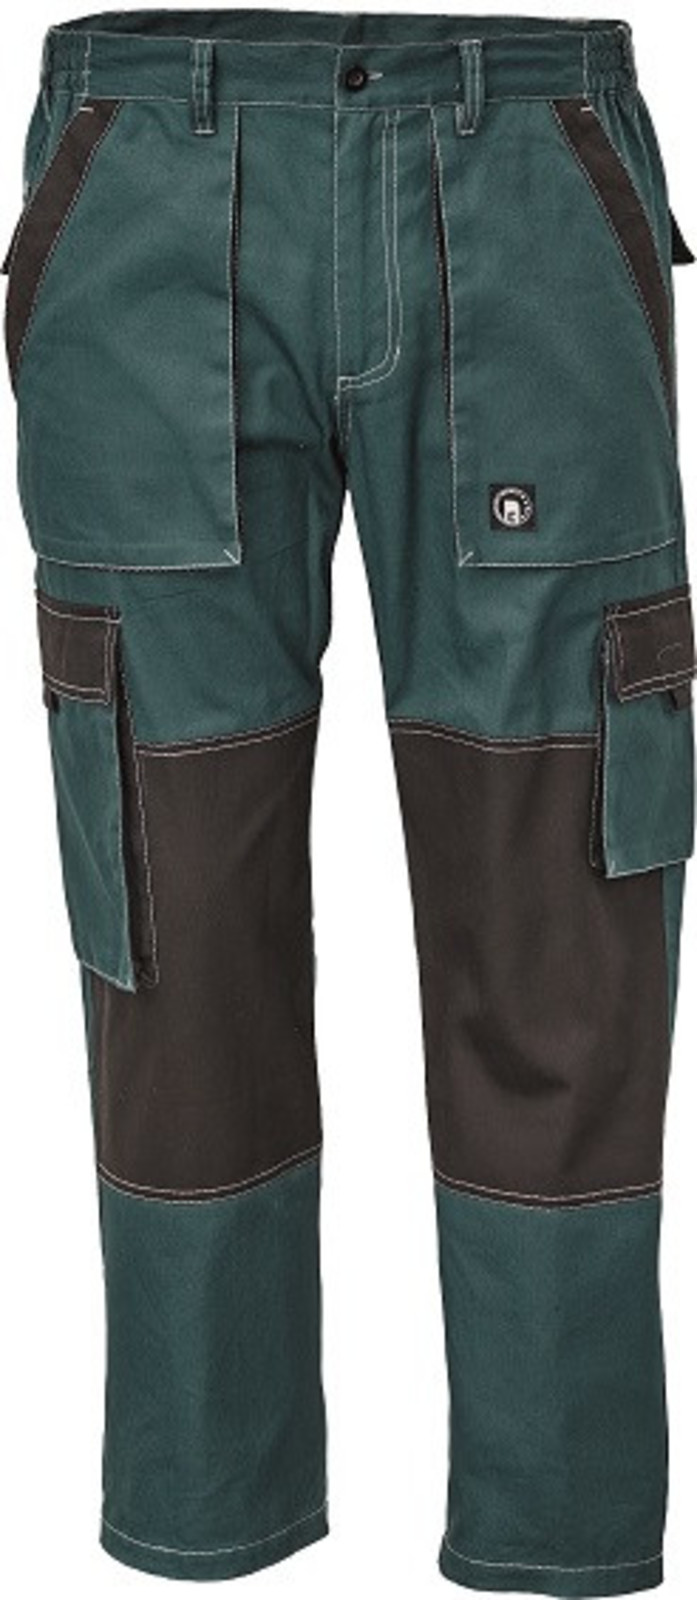 Tenšie bavlnené montérky Max Summer - veľkosť: 46, farba: zelená/čierna